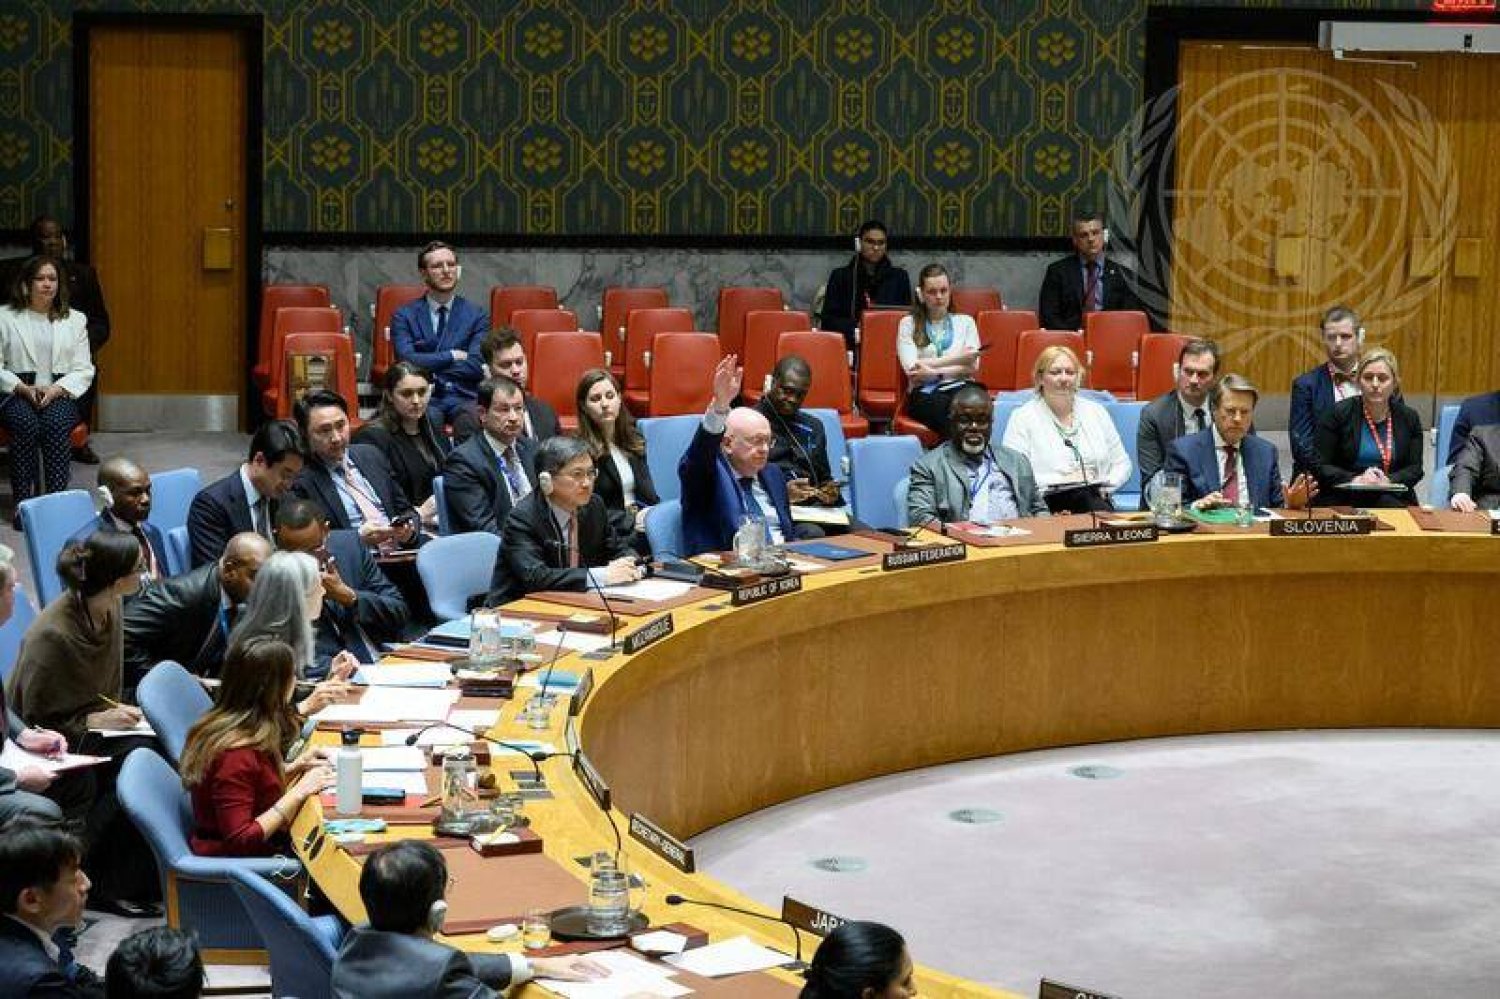 المندوب الروسي الدائم لدى الأمم المتحدة فاسيلي نيبينزيا رافعاً يده لاستخدام حق النقض (الفيتو) ضد مشروع قرار أميركي في مجلس الأمن (صور الأمم المتحدة)